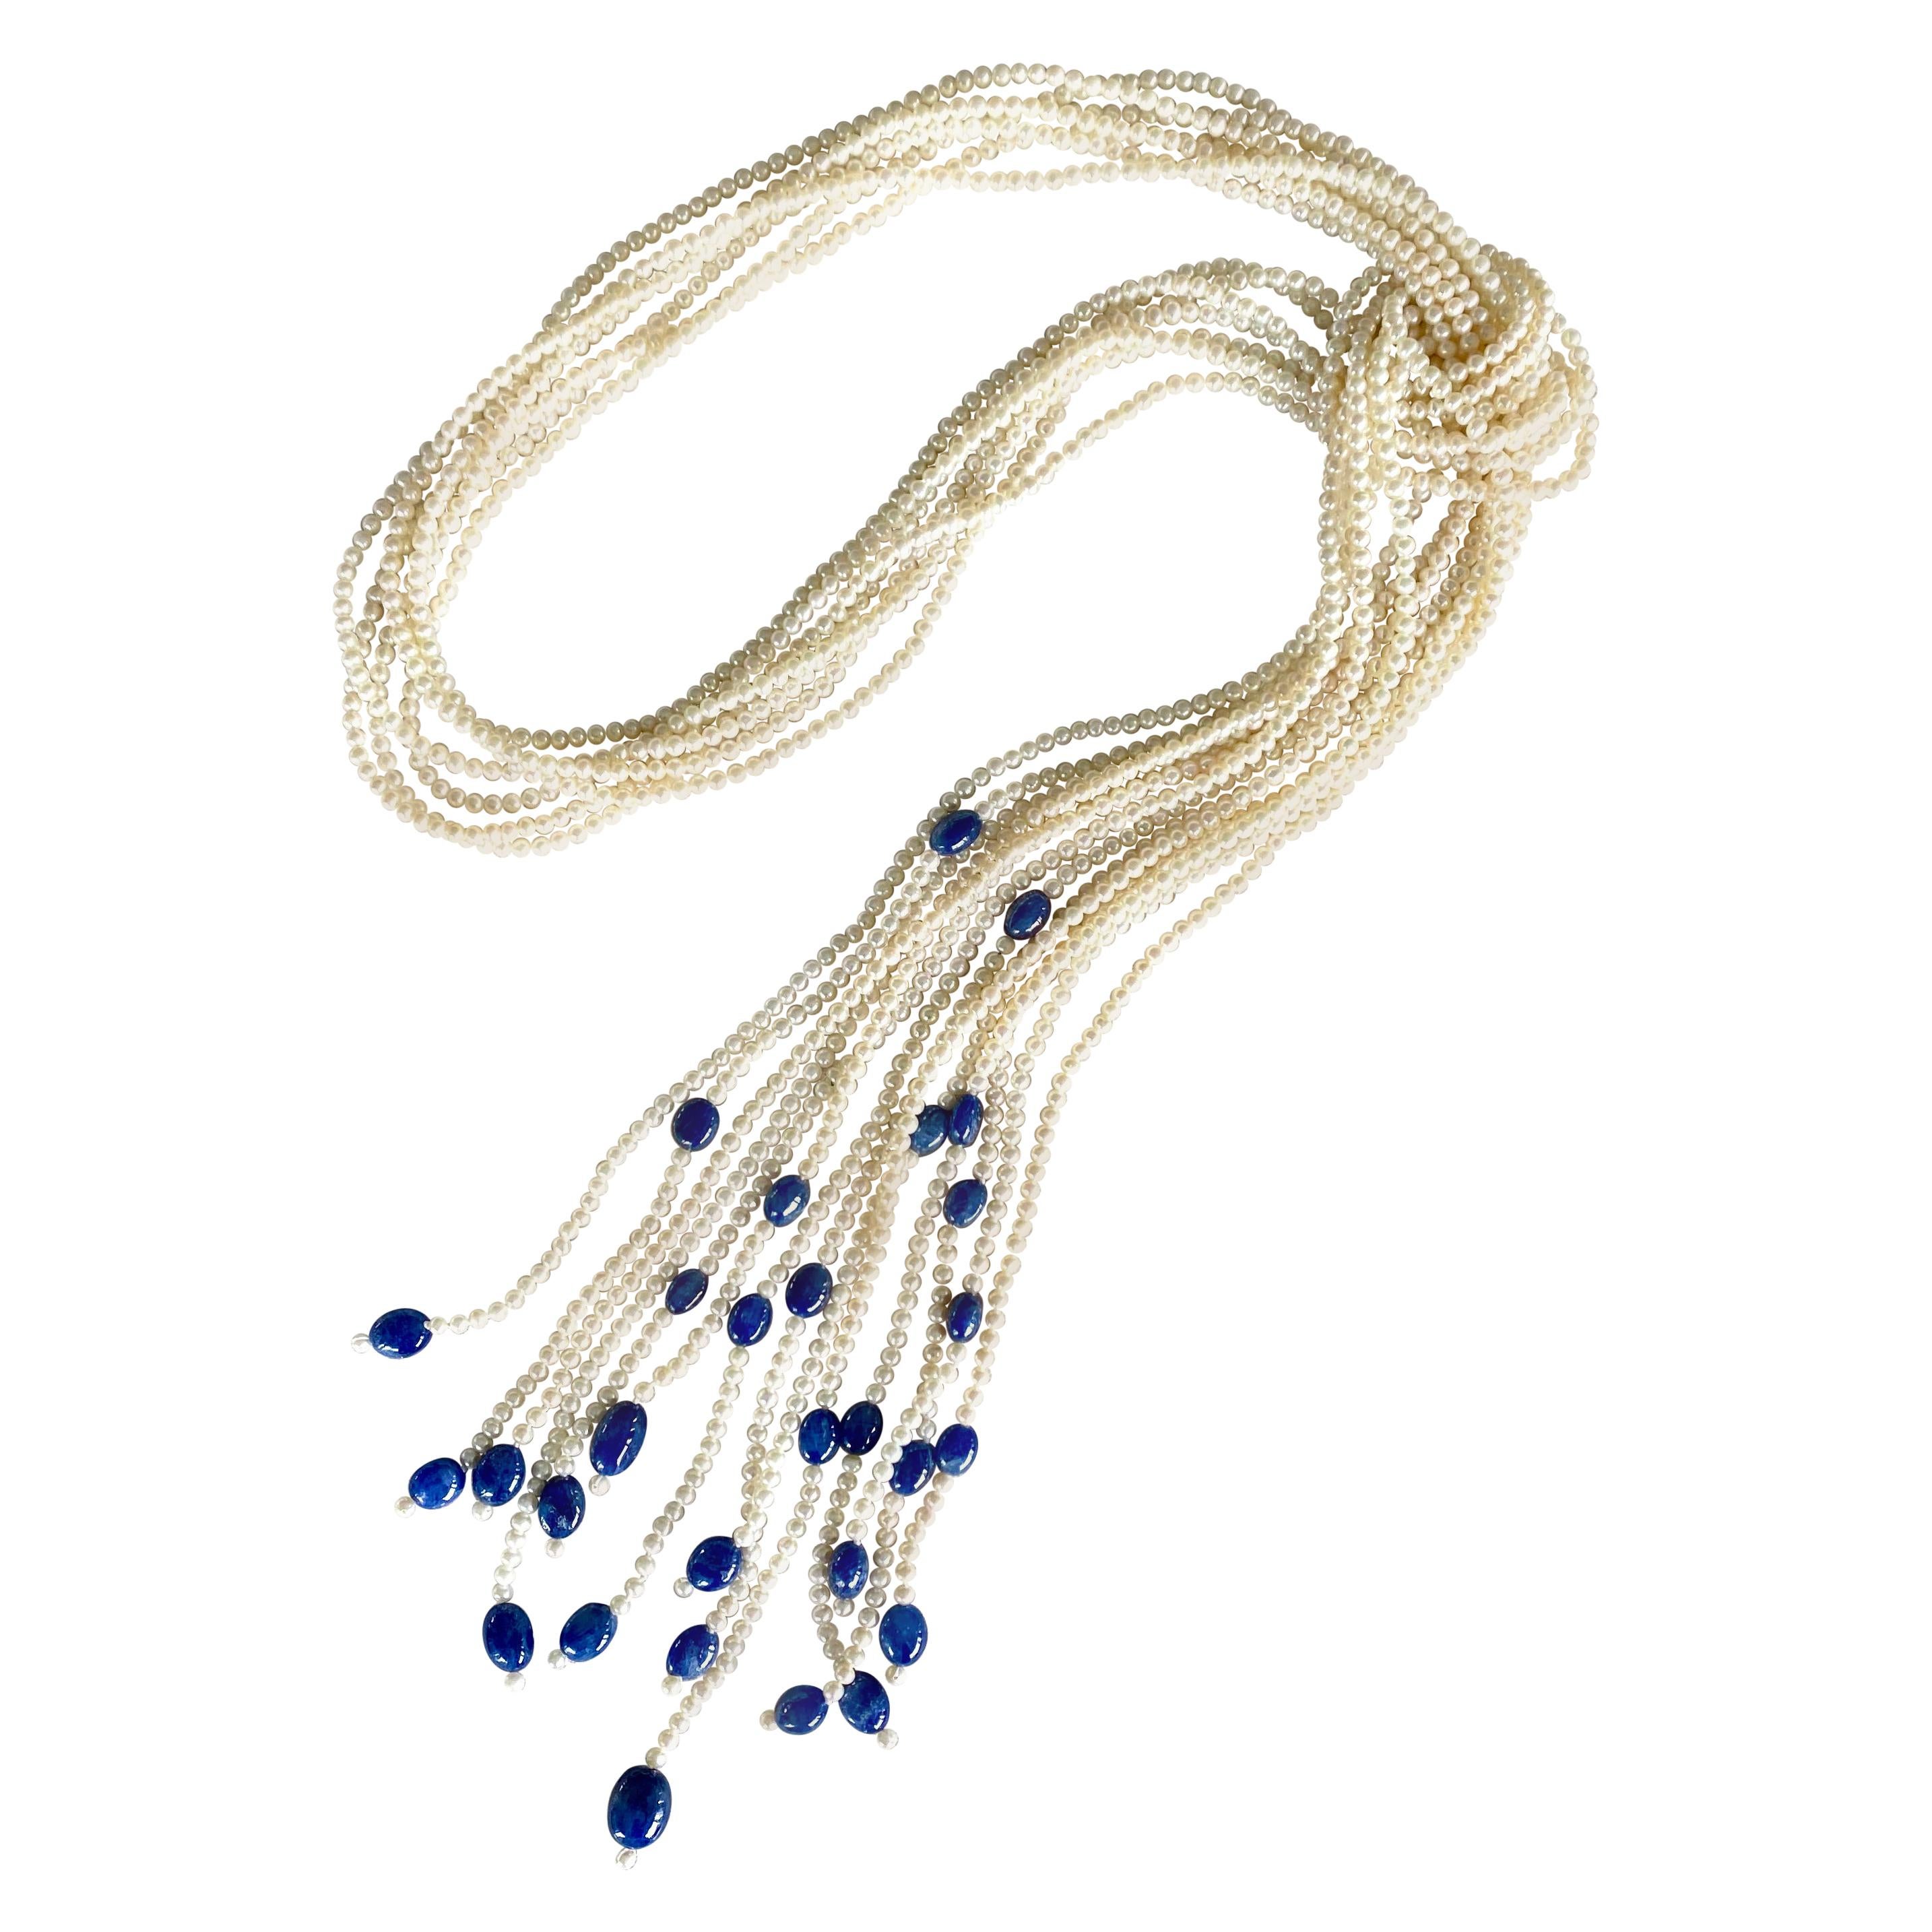 Siebenstrangige Halskette mit runden weißen Saatperlen und blauen Saphirperlen und Perlen